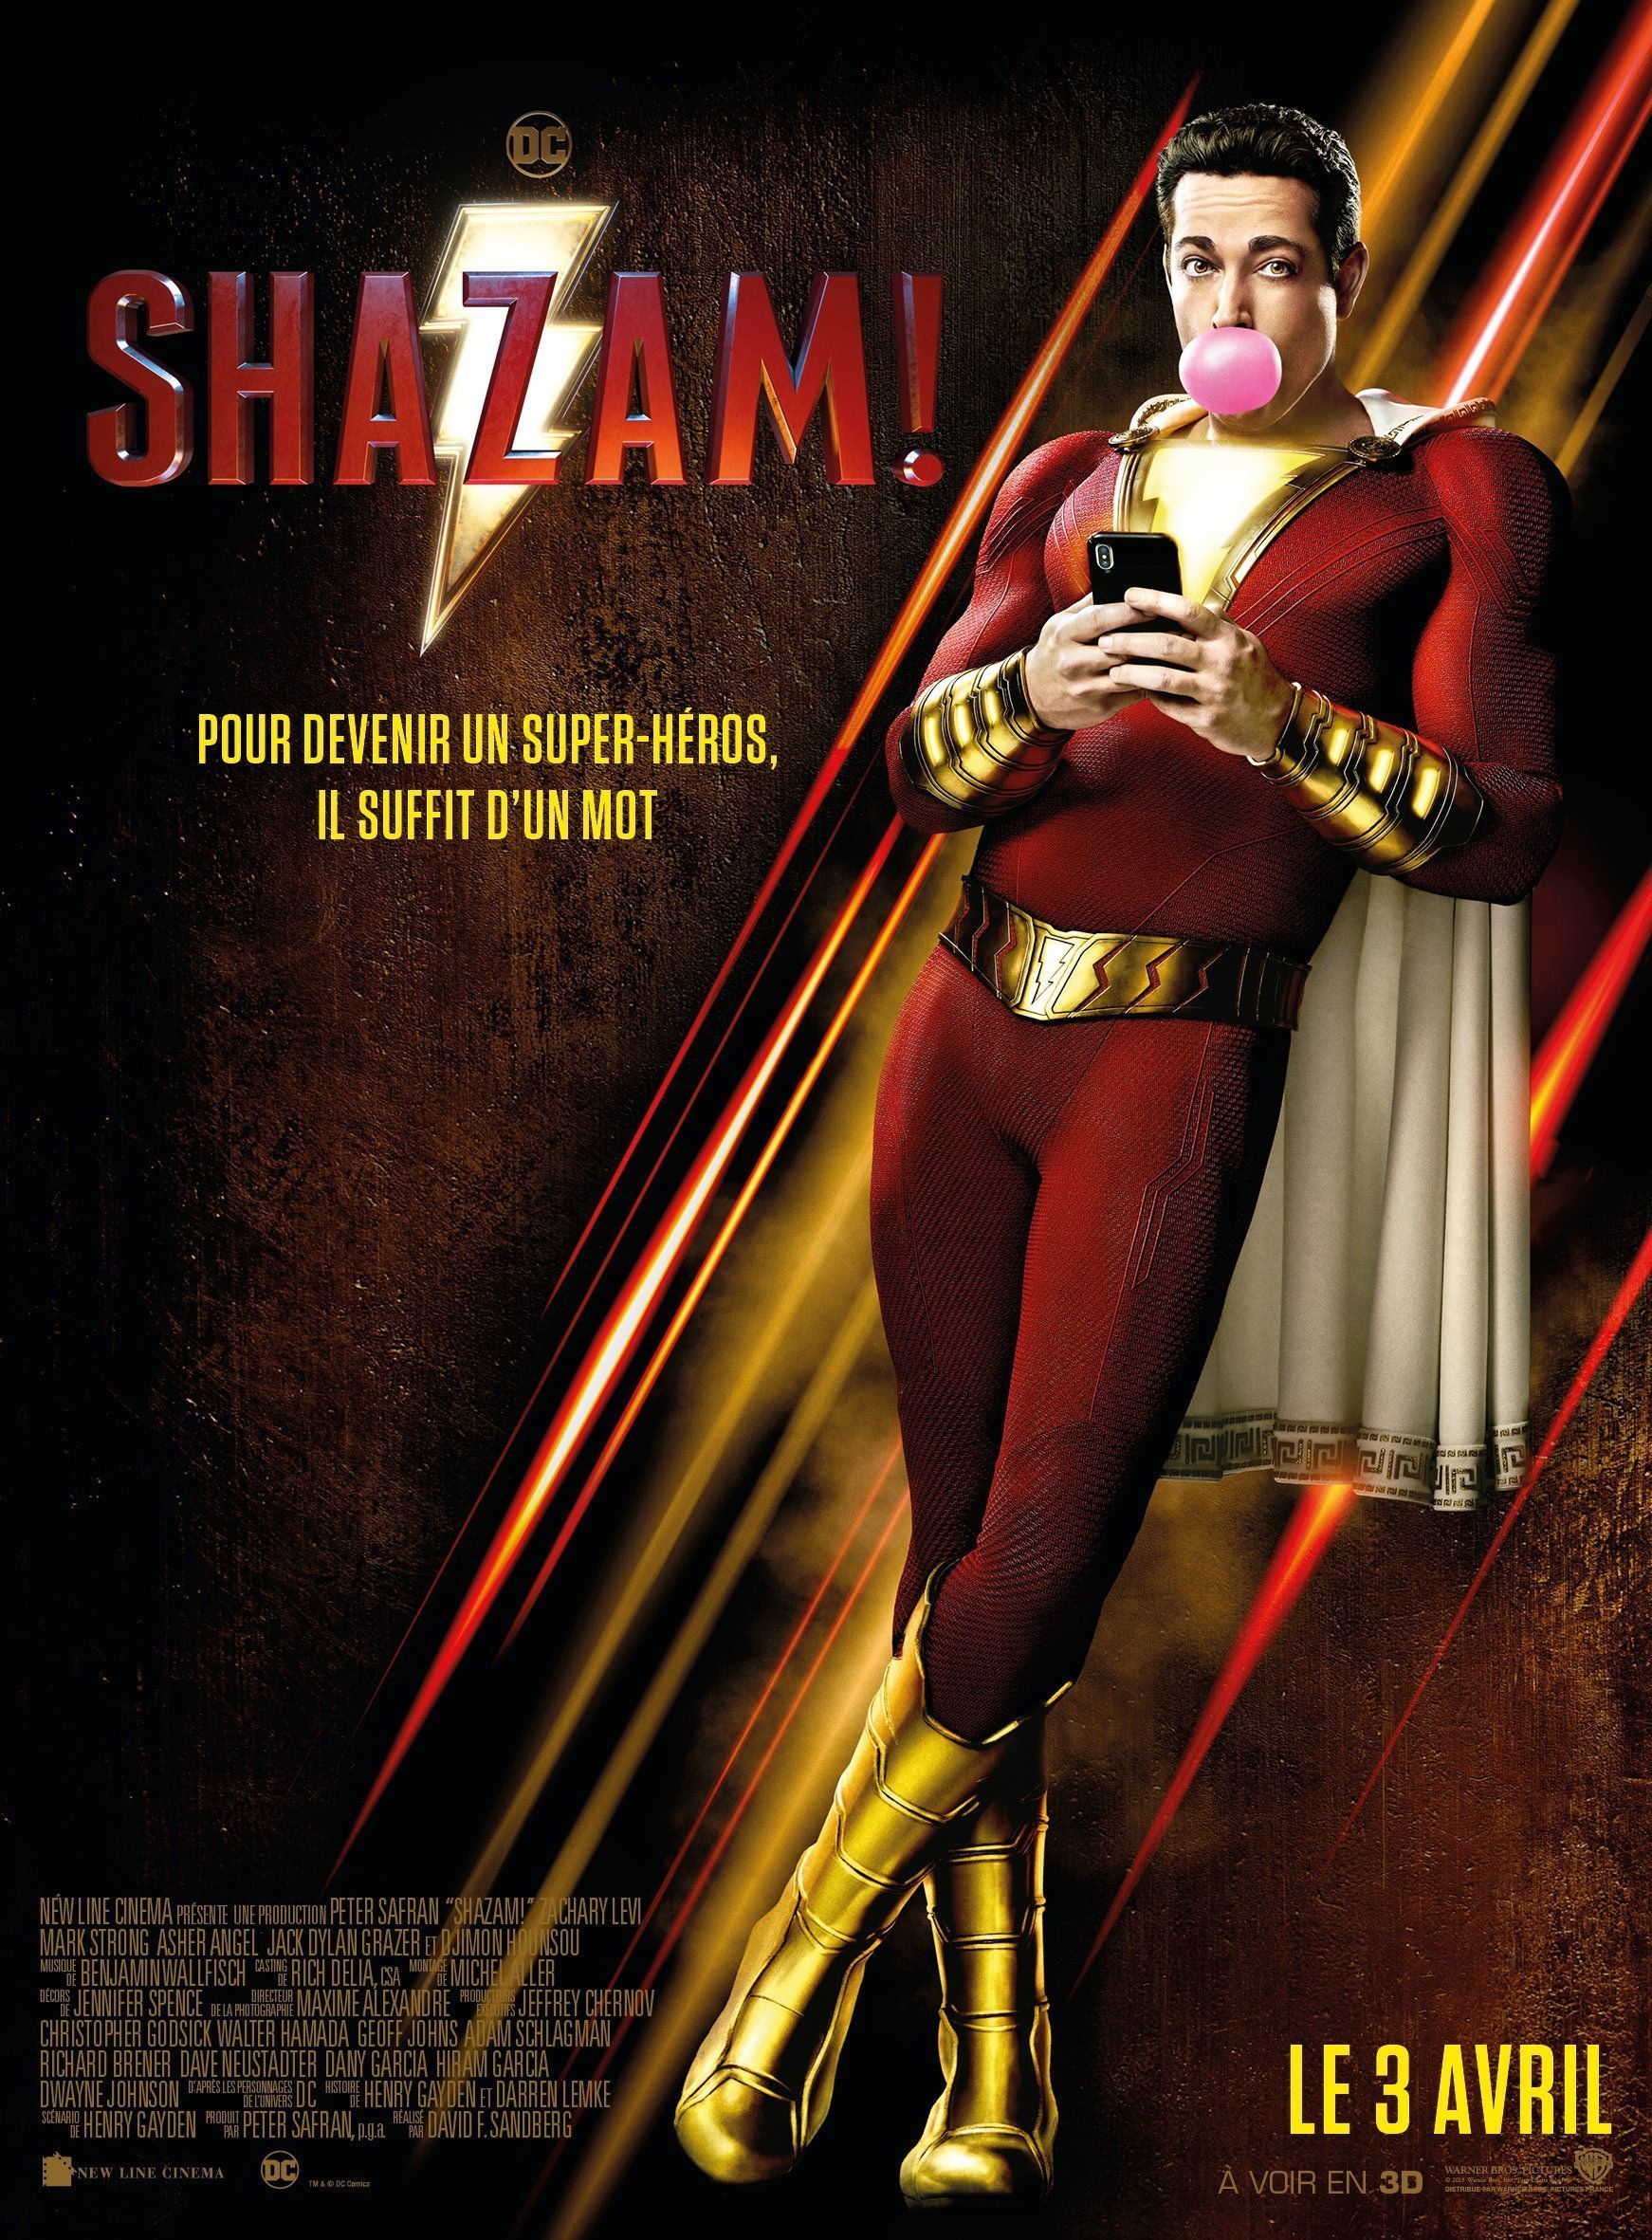 Affiche française du film Shazam! réalisé par David F. Sandberg avec Zachary Levi